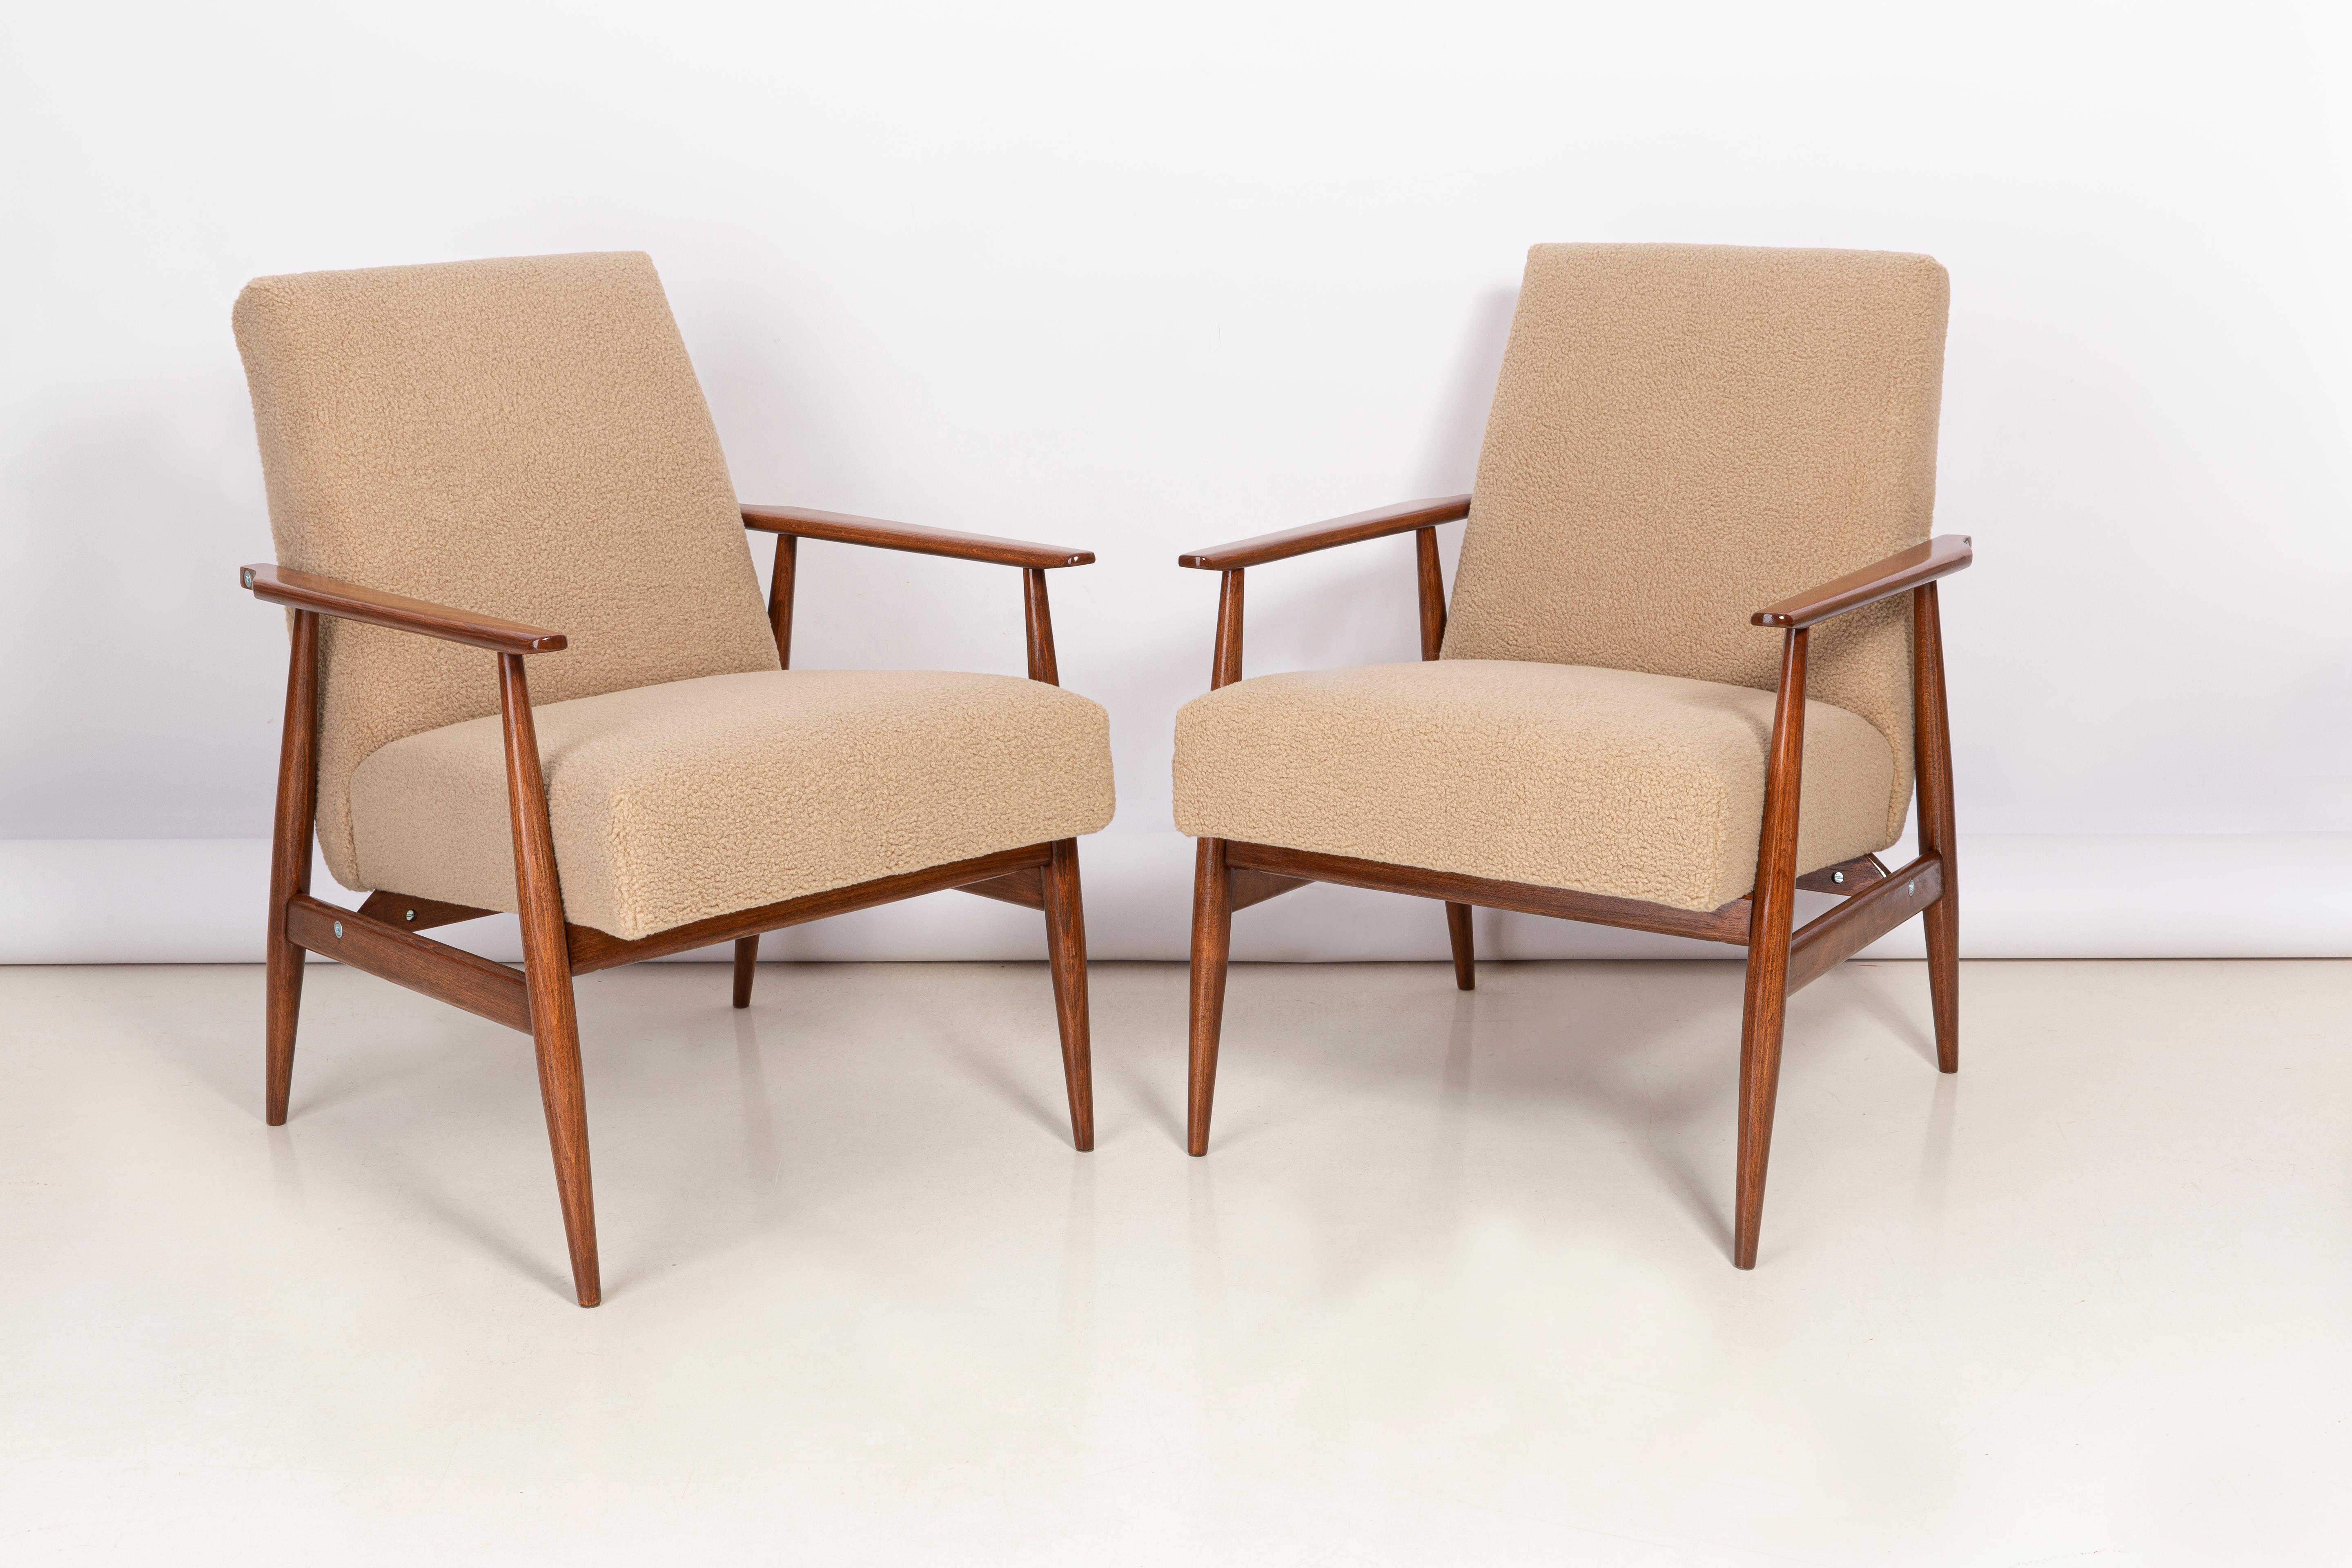 Ein Paar Kamel-Bouclé-Sessel, entworfen von Henryk Lis. Möbel nach kompletter Renovierung durch Schreiner und Polsterei. Die Sessel passen perfekt in minimalistische Räume, sowohl im privaten als auch im öffentlichen Bereich. 

Polsterung -